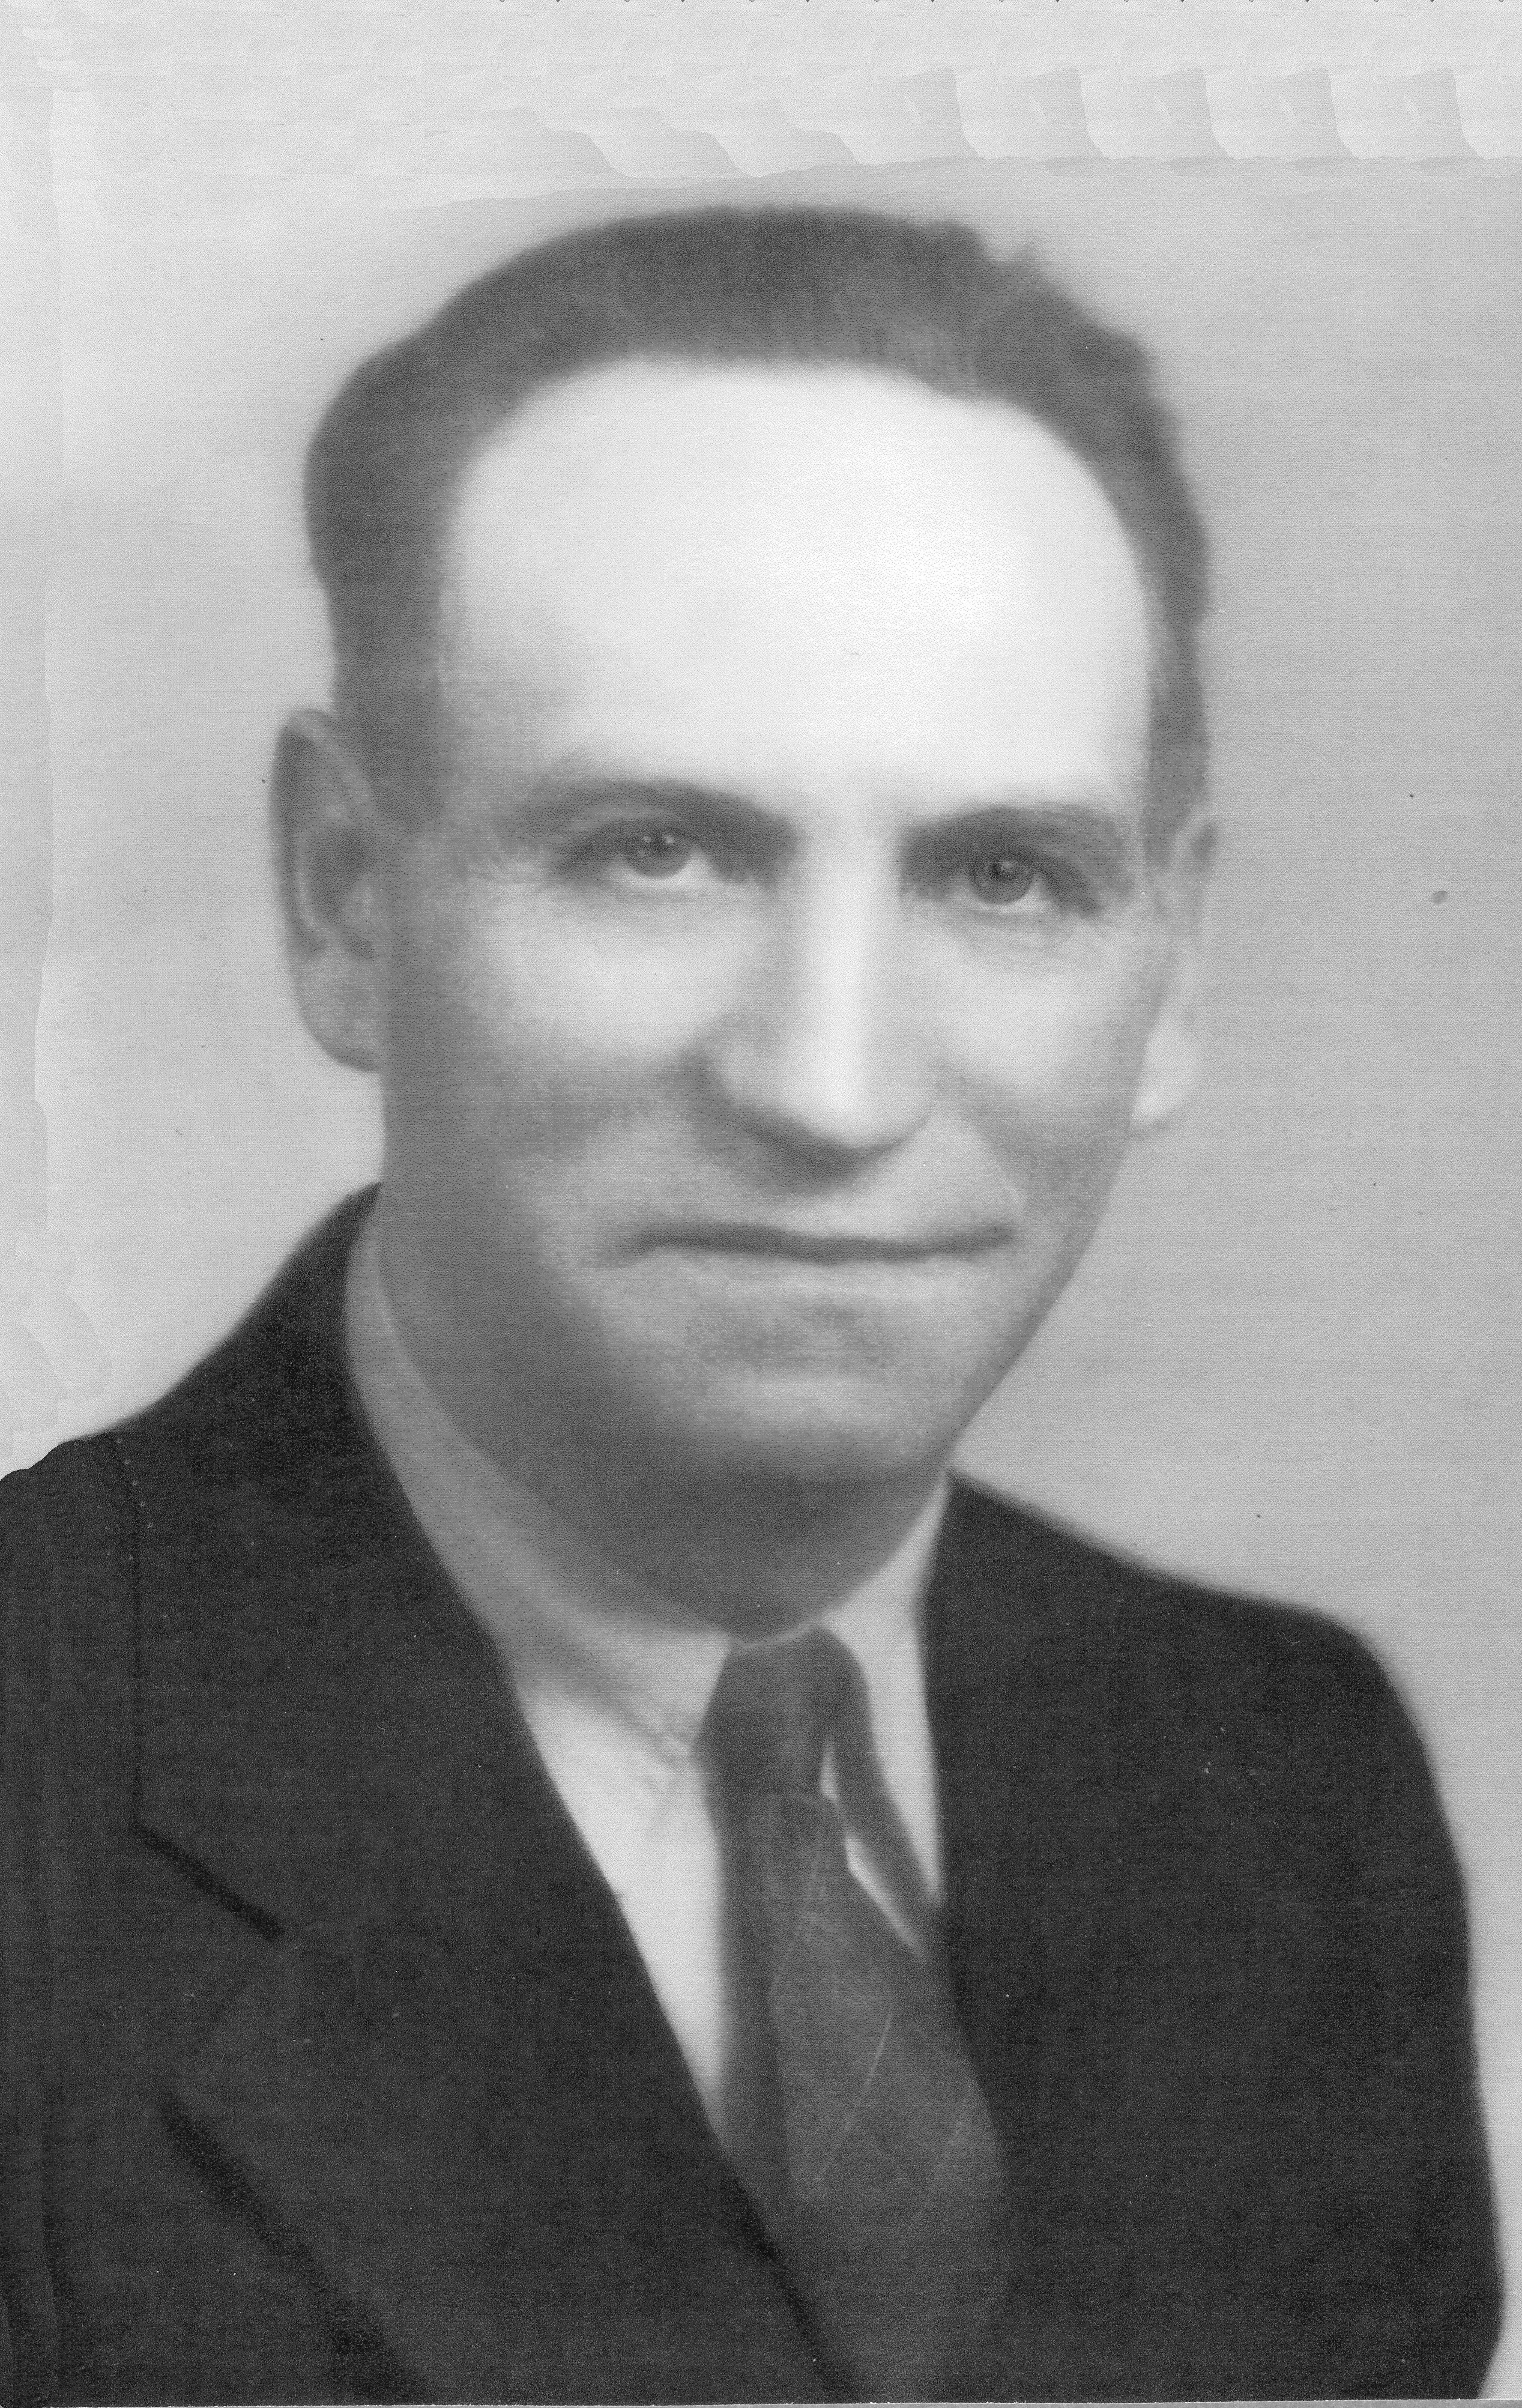 Bangerter, Herman Rudolph